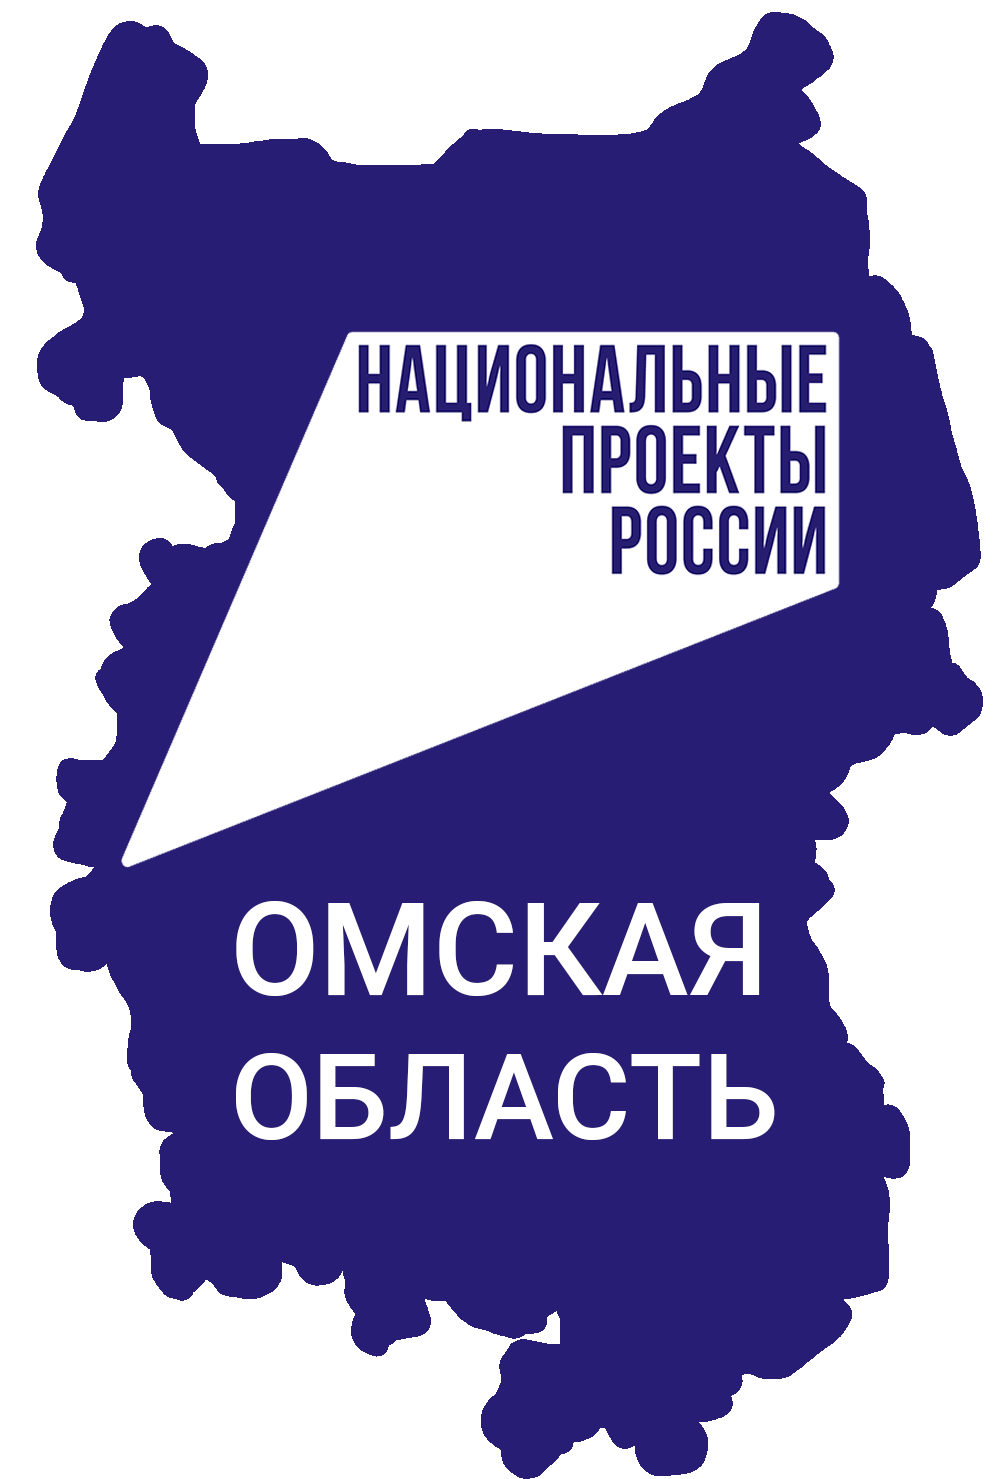 Омский региональный фонд микрофинансирования субъектовмалого и среднего предпринимательства